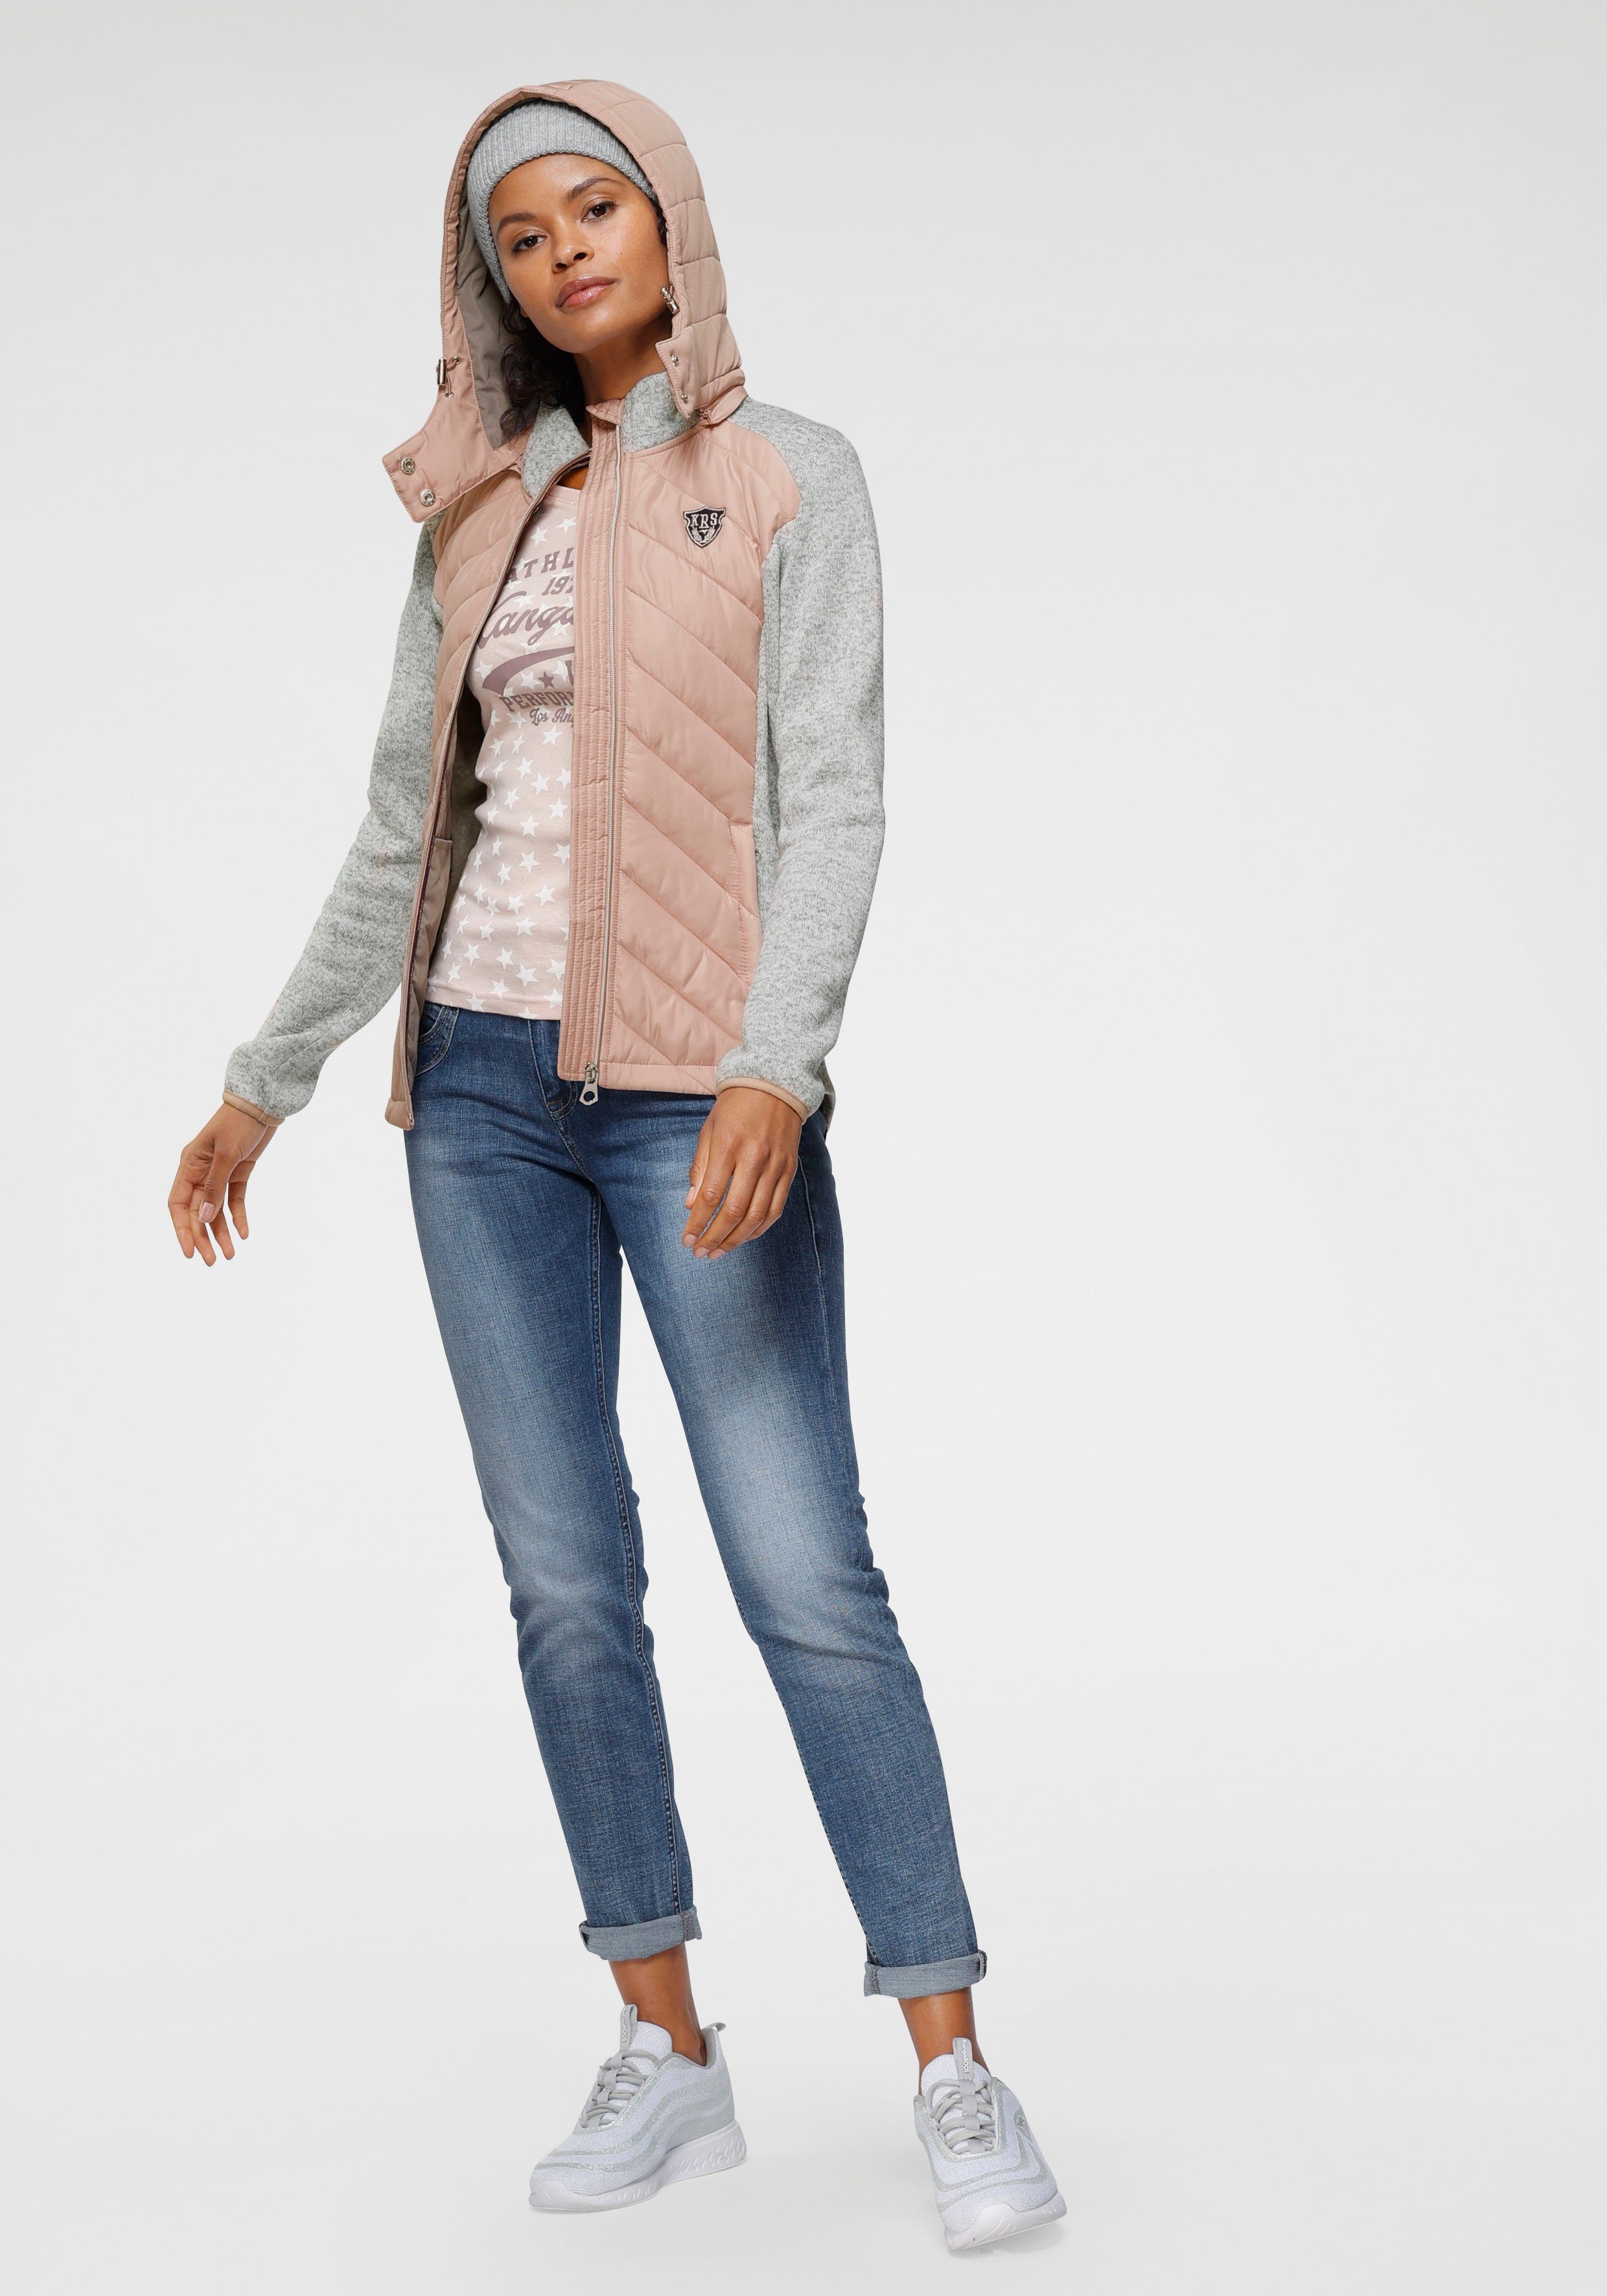 KangaROOS Kurzjacke im rosa-grau aus Material) 2-In-1 nachhaltigem Look trendigen (Jacke